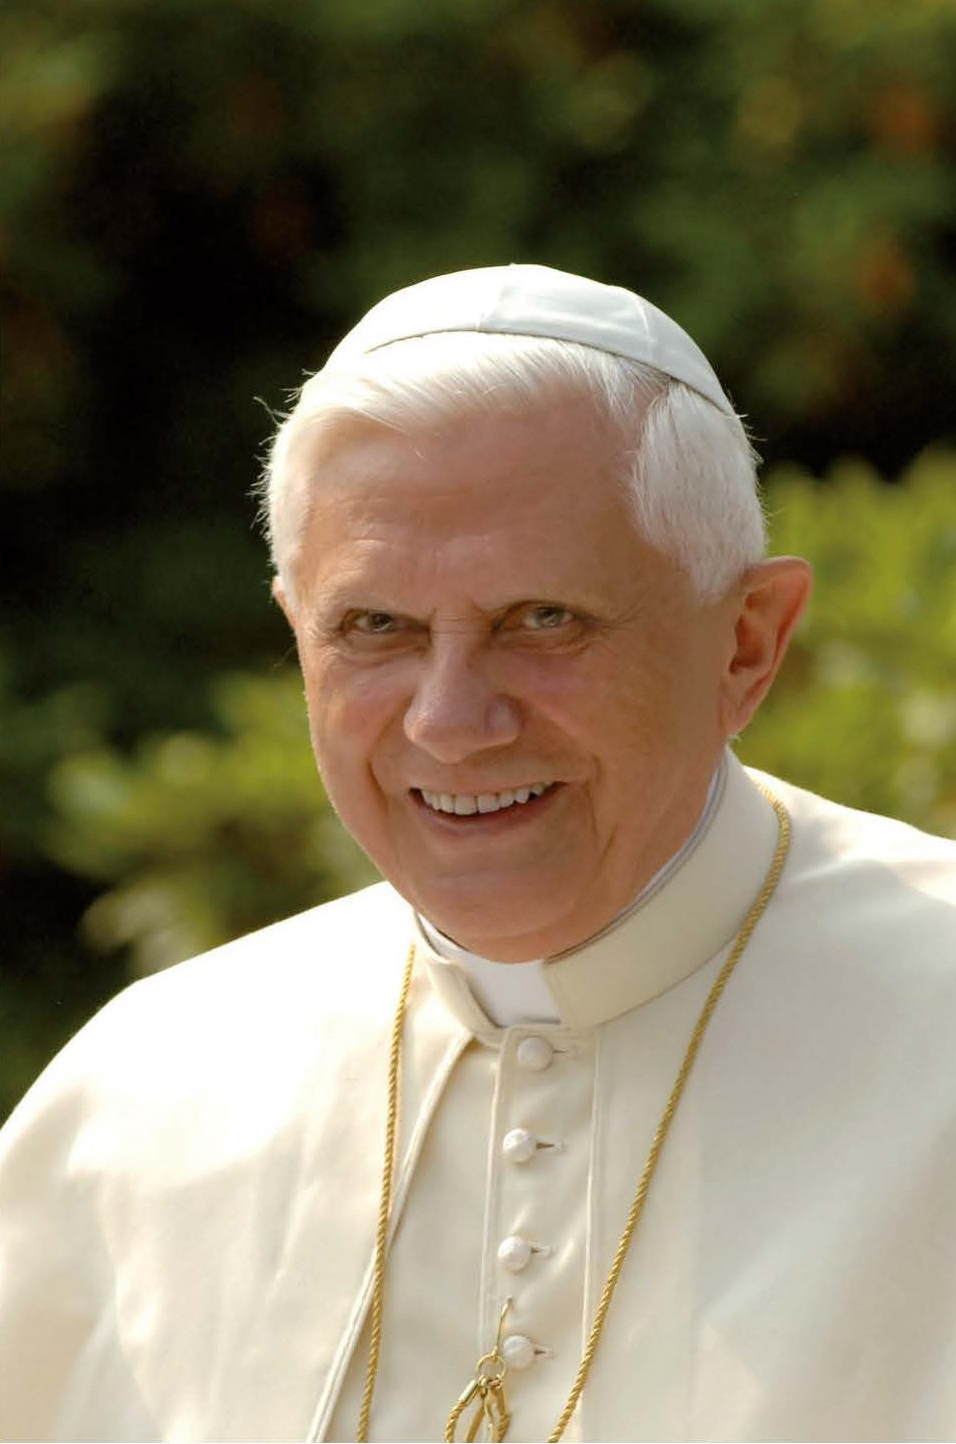 20220103 Papst. em.Benedikt XVI druck von Herrn Schötz